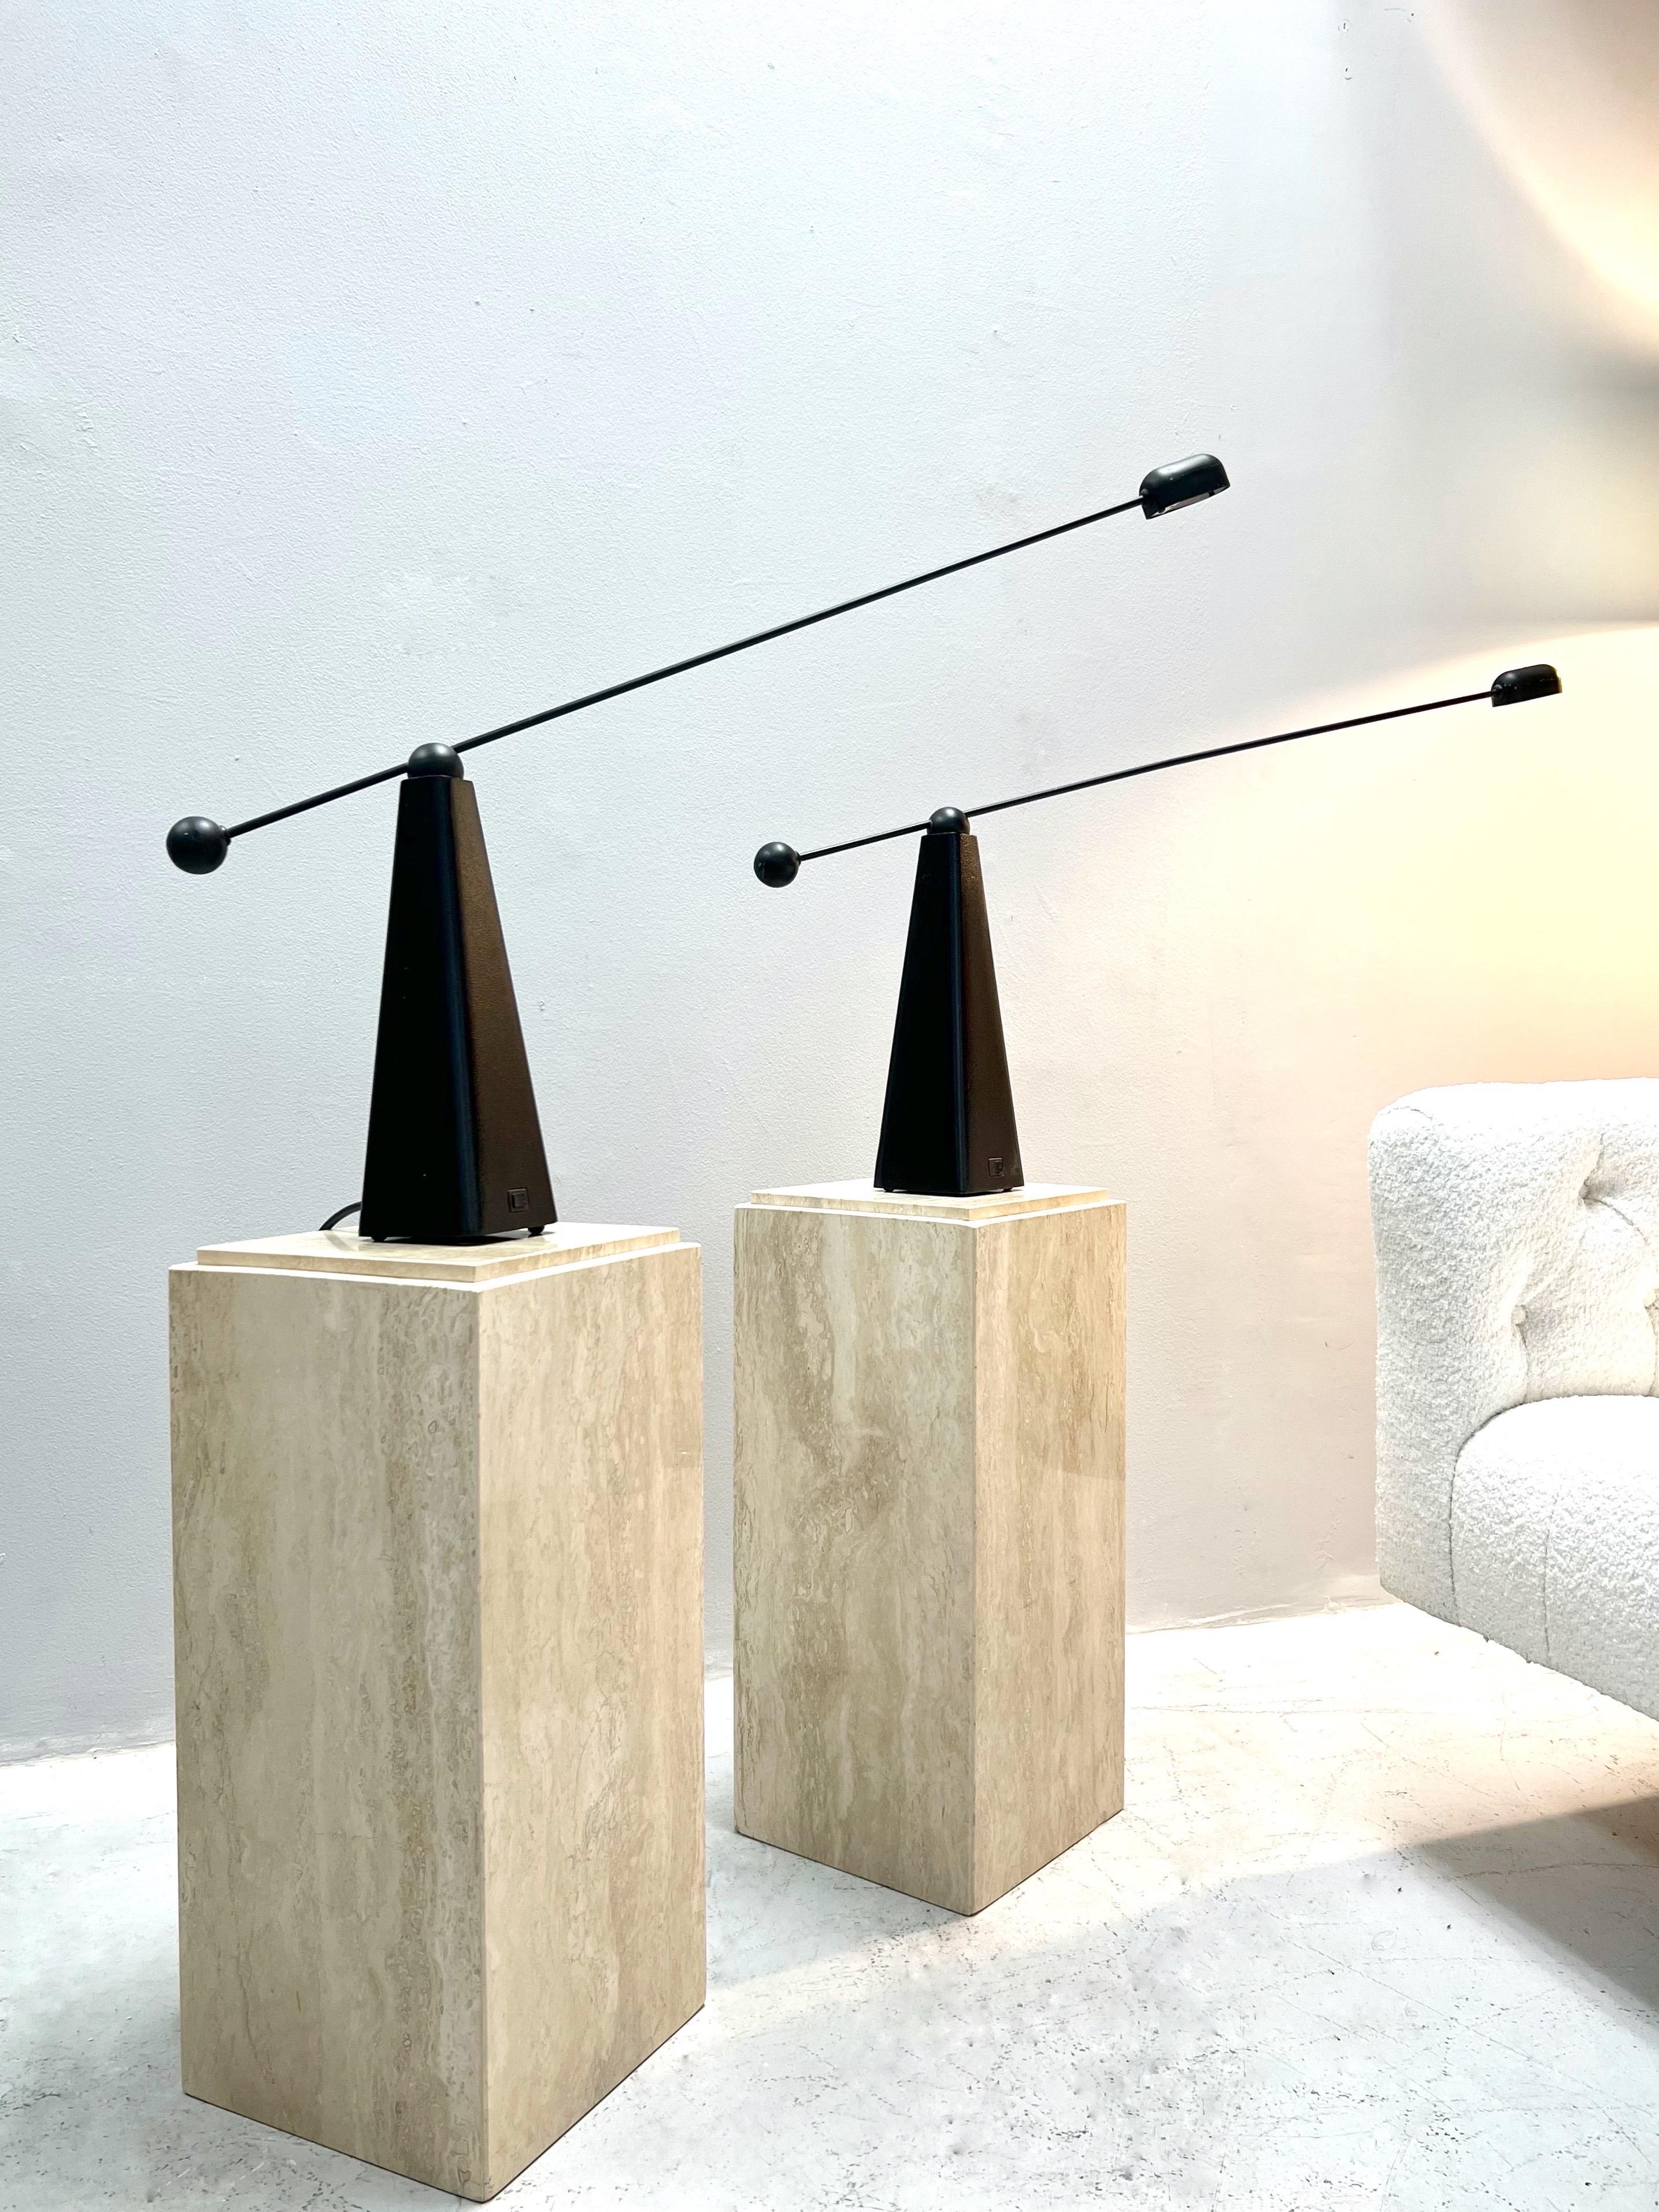 Great pair of versatile pedestals. Simple minimalist design.